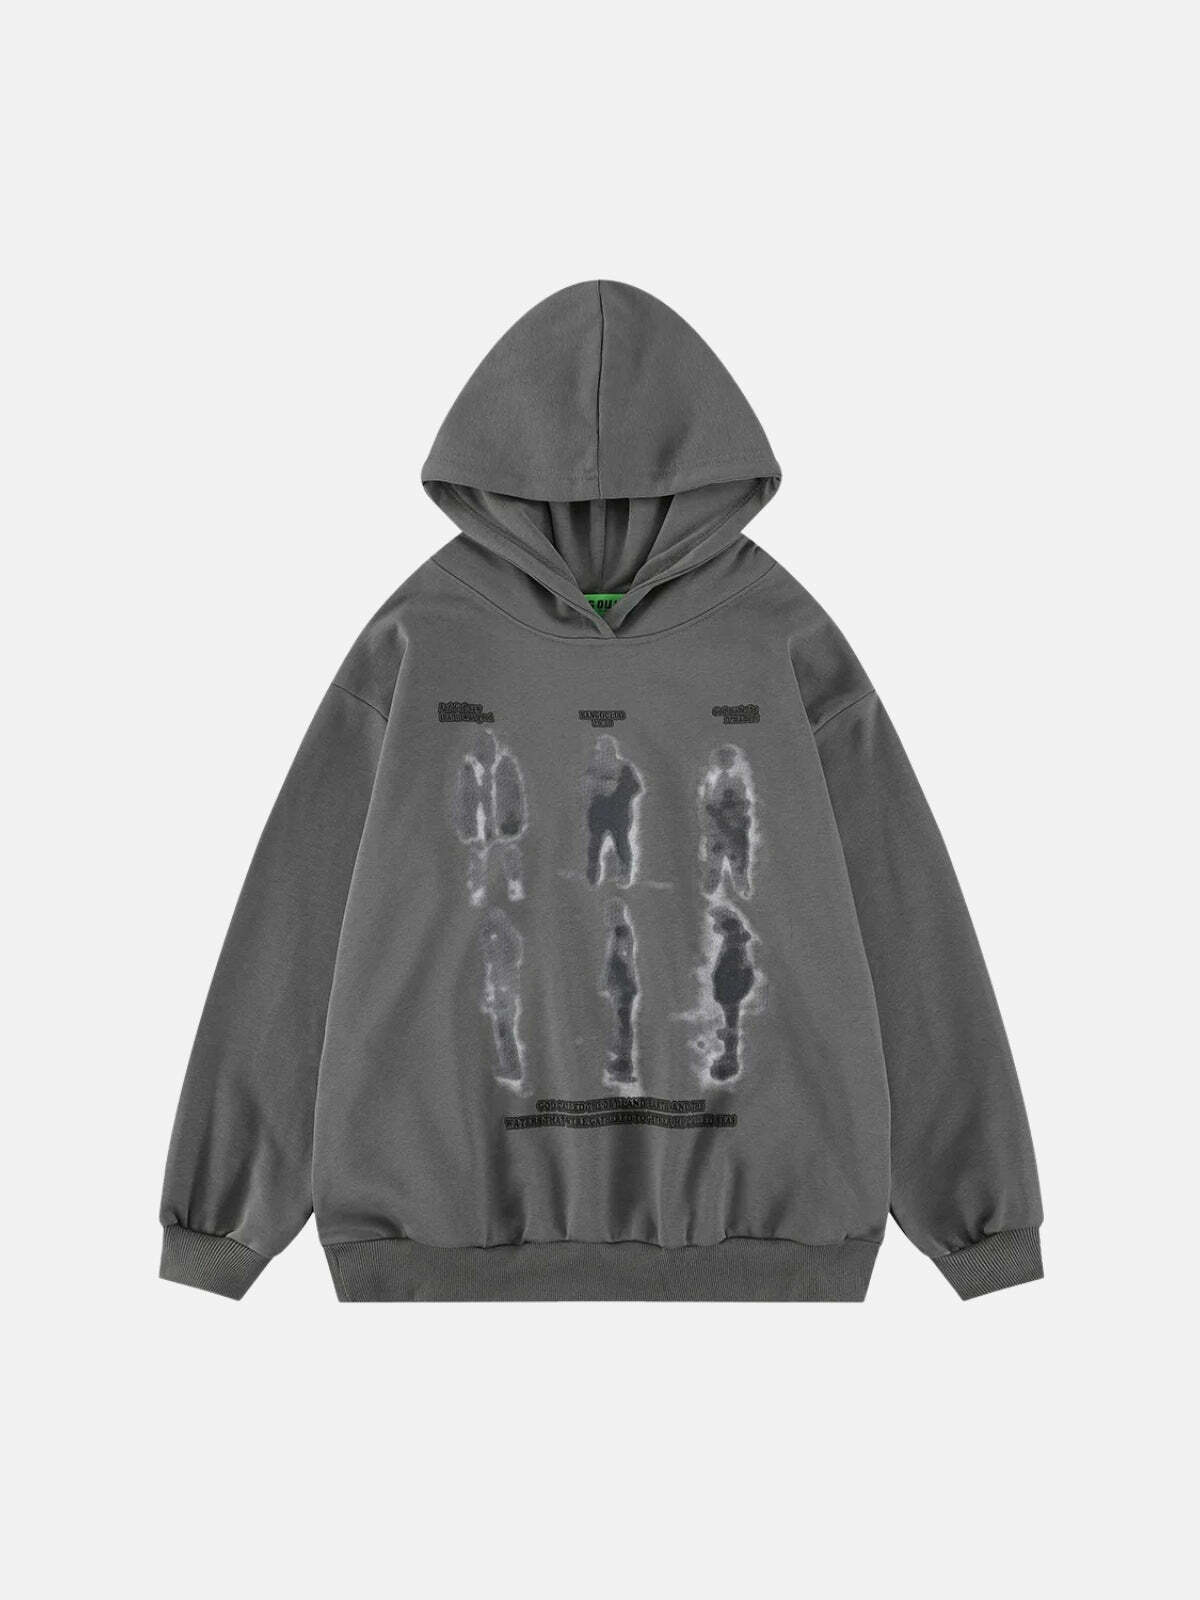 blurry shadow print hoodie edgy & urban streetwear 2040